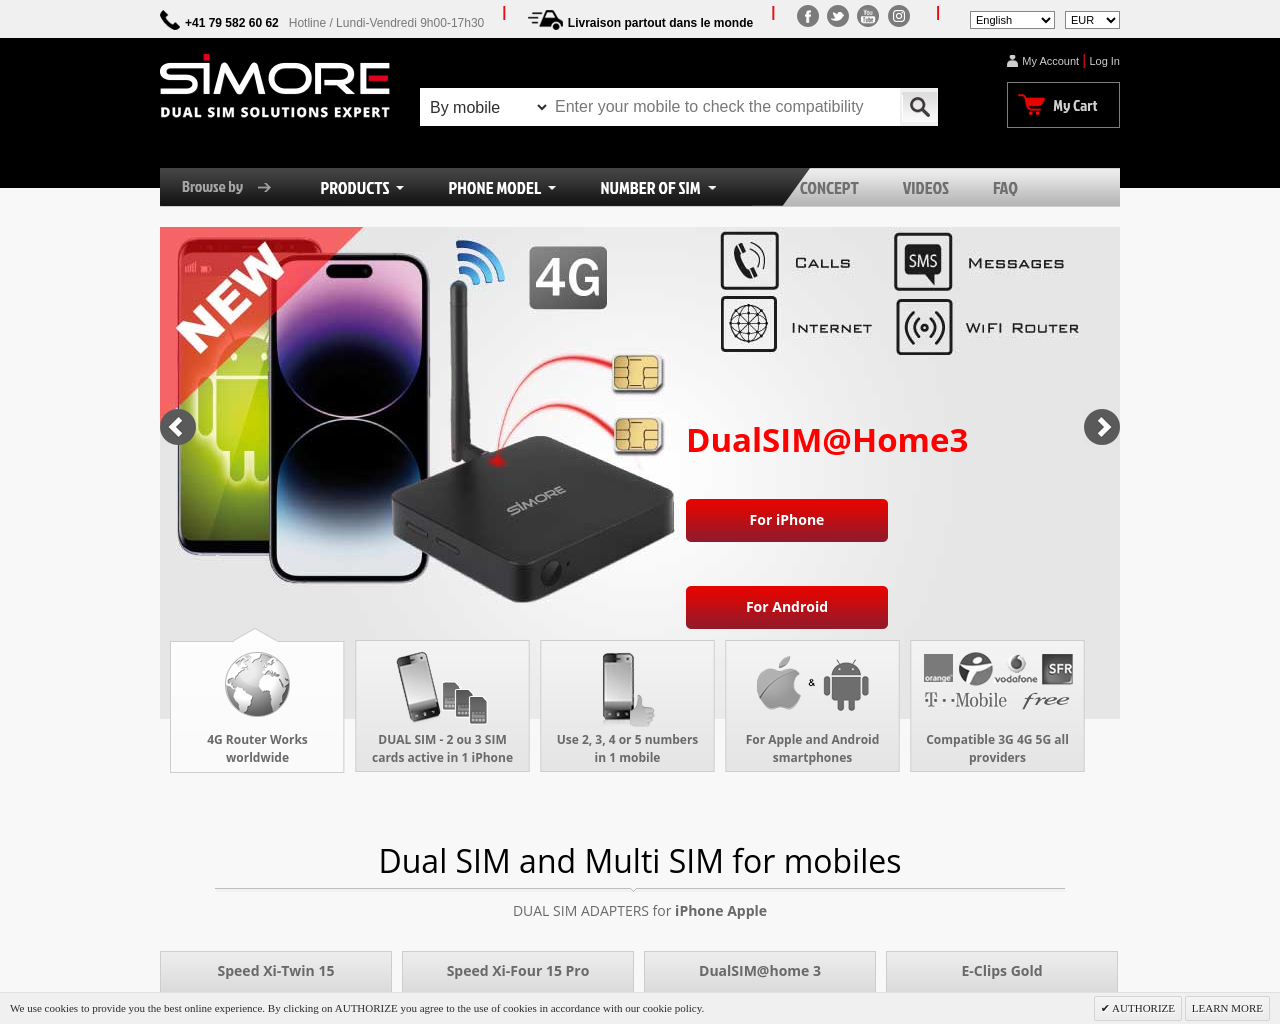 simore.com